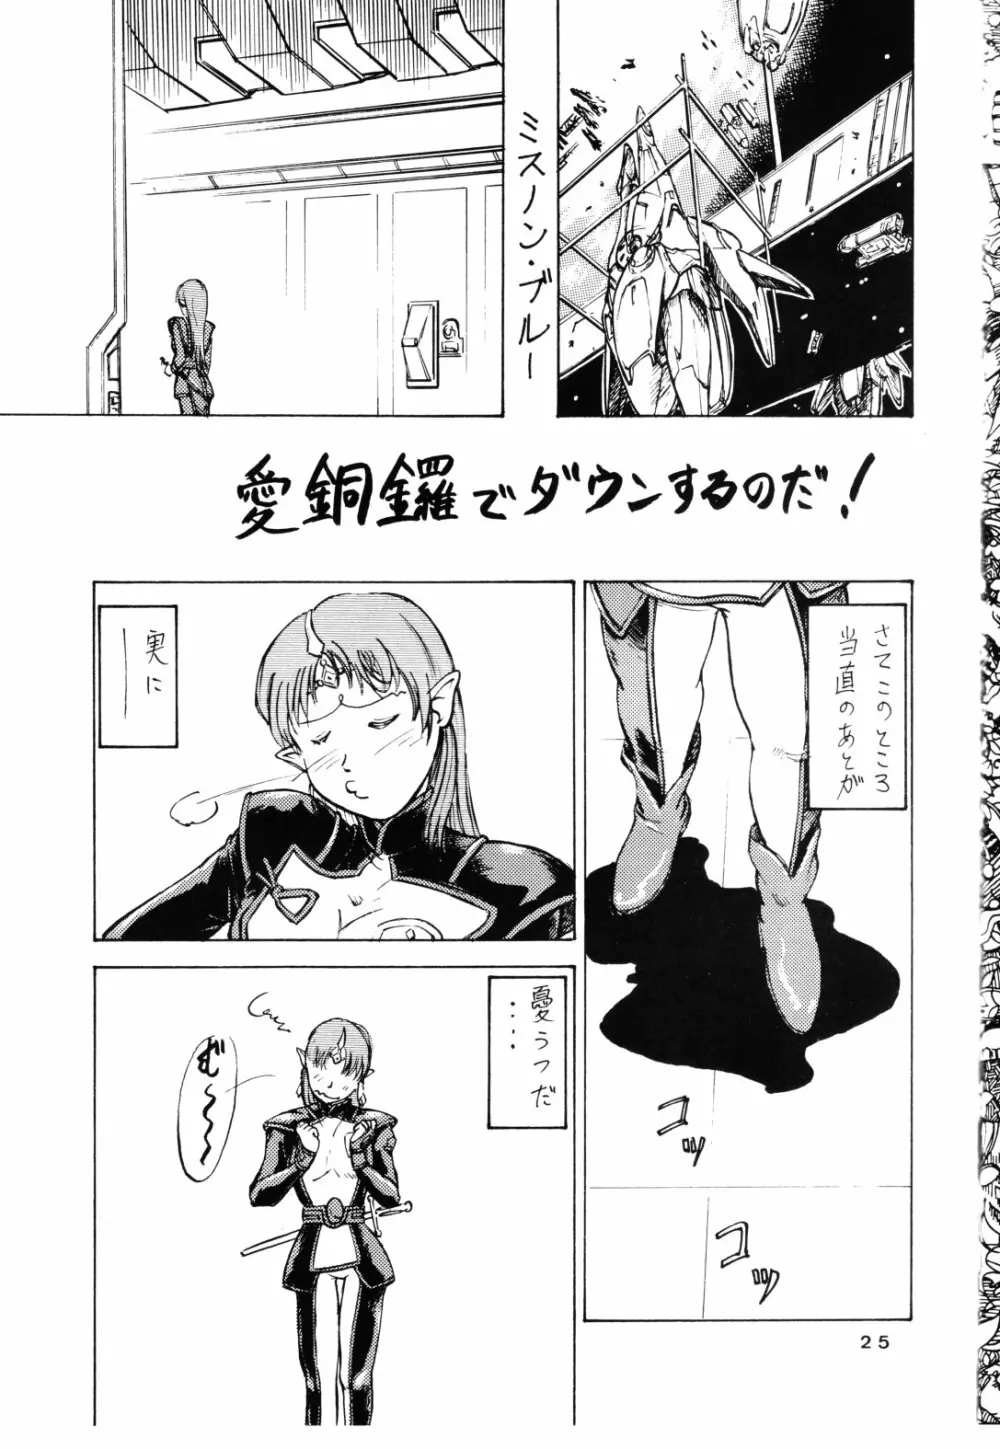 追放覚悟 Ver 4.0 - page25